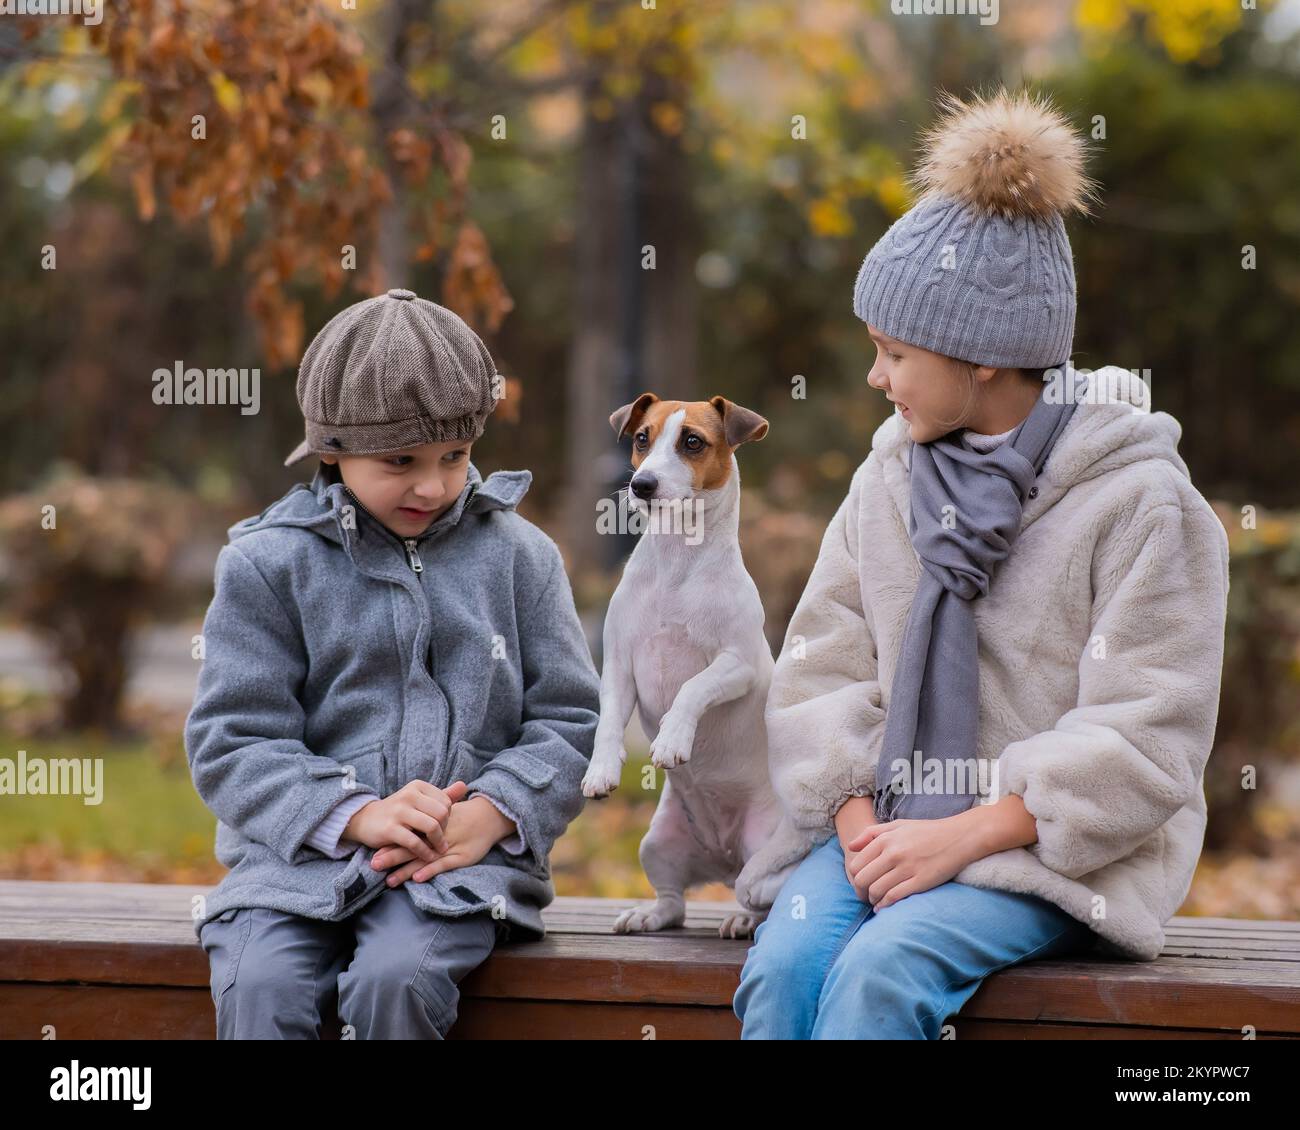 Bruder und Schwester sitzen in einer Umarmung mit einem Hund auf einer Bank für einen Spaziergang im Herbstpark. Junge, Mädchen und Jack russell Terrier. Stockfoto